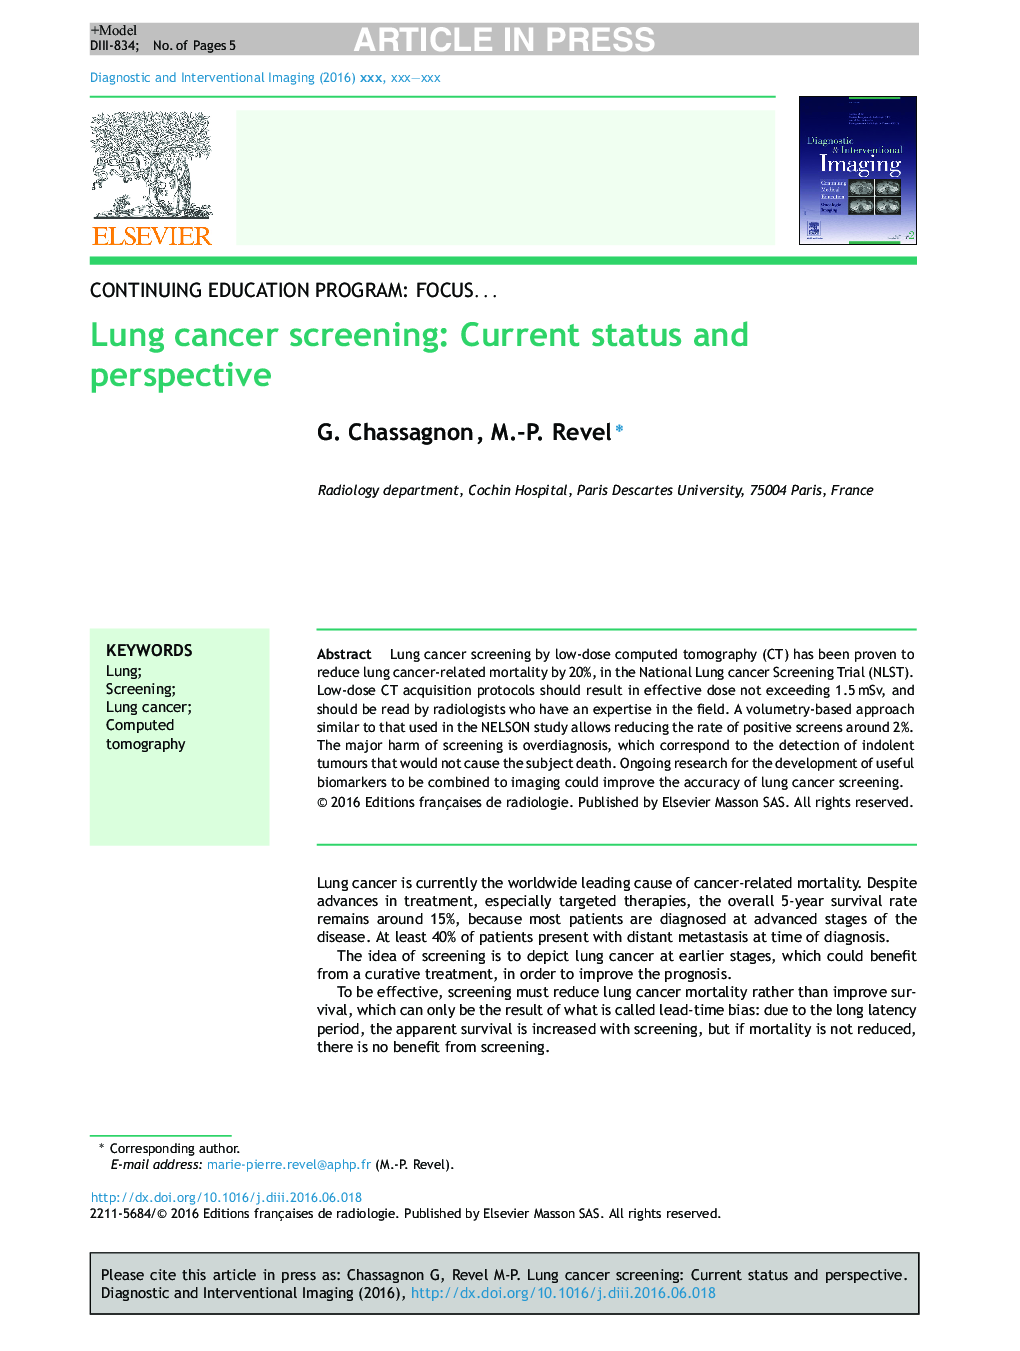 غربالگری سرطان ریه: وضعیت و چشم انداز فعلی 